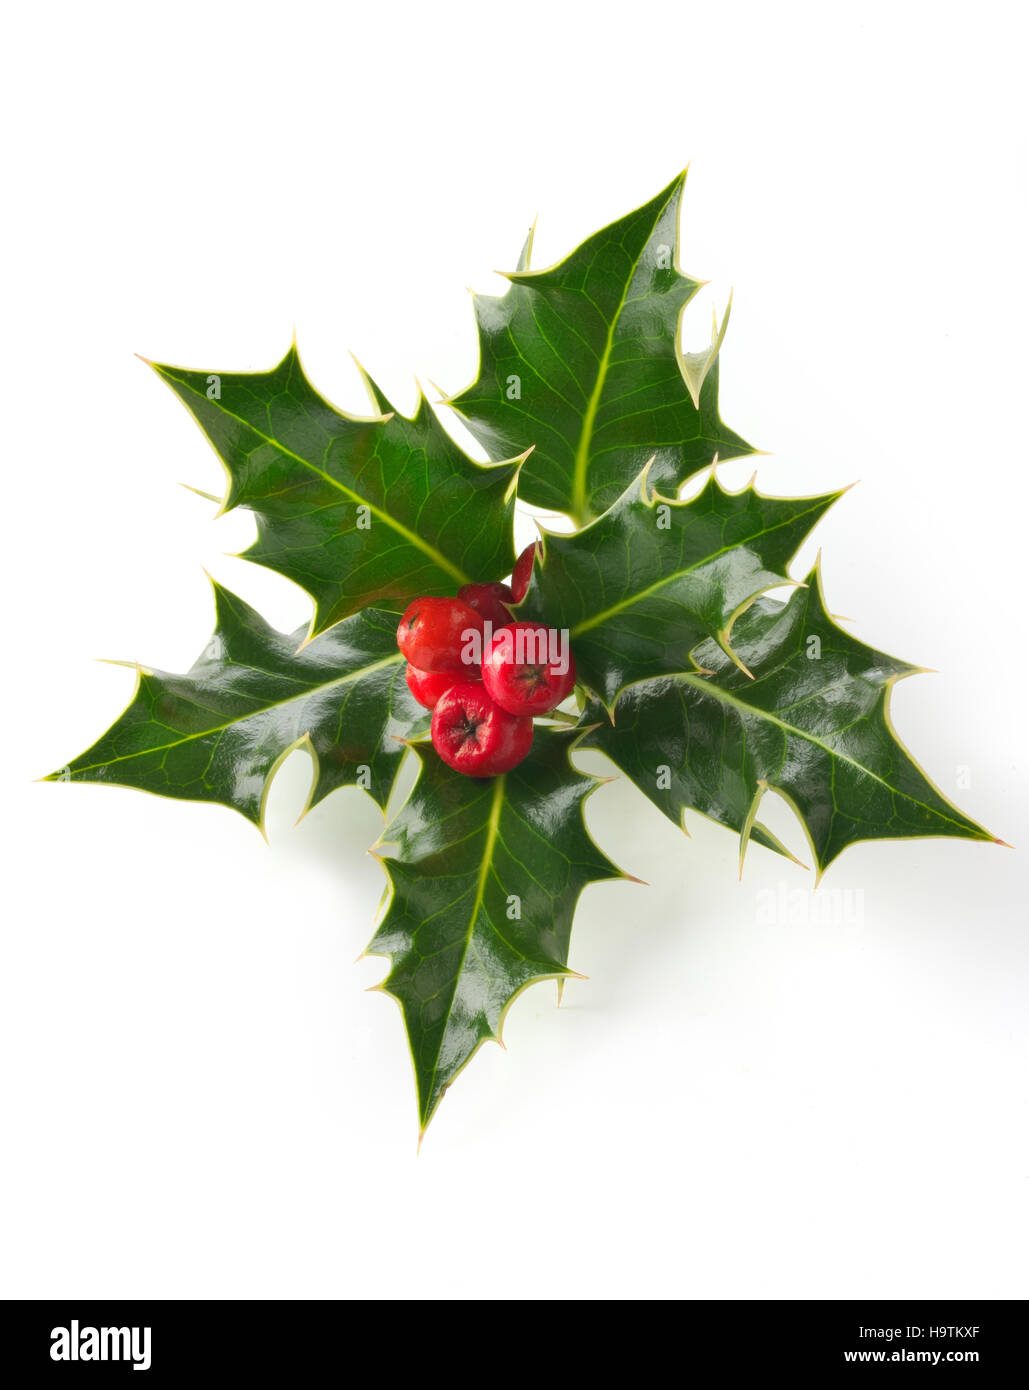 Holly foglie (ilex), decorazione di Natale con bacche rosse contro uno sfondo bianco Foto Stock